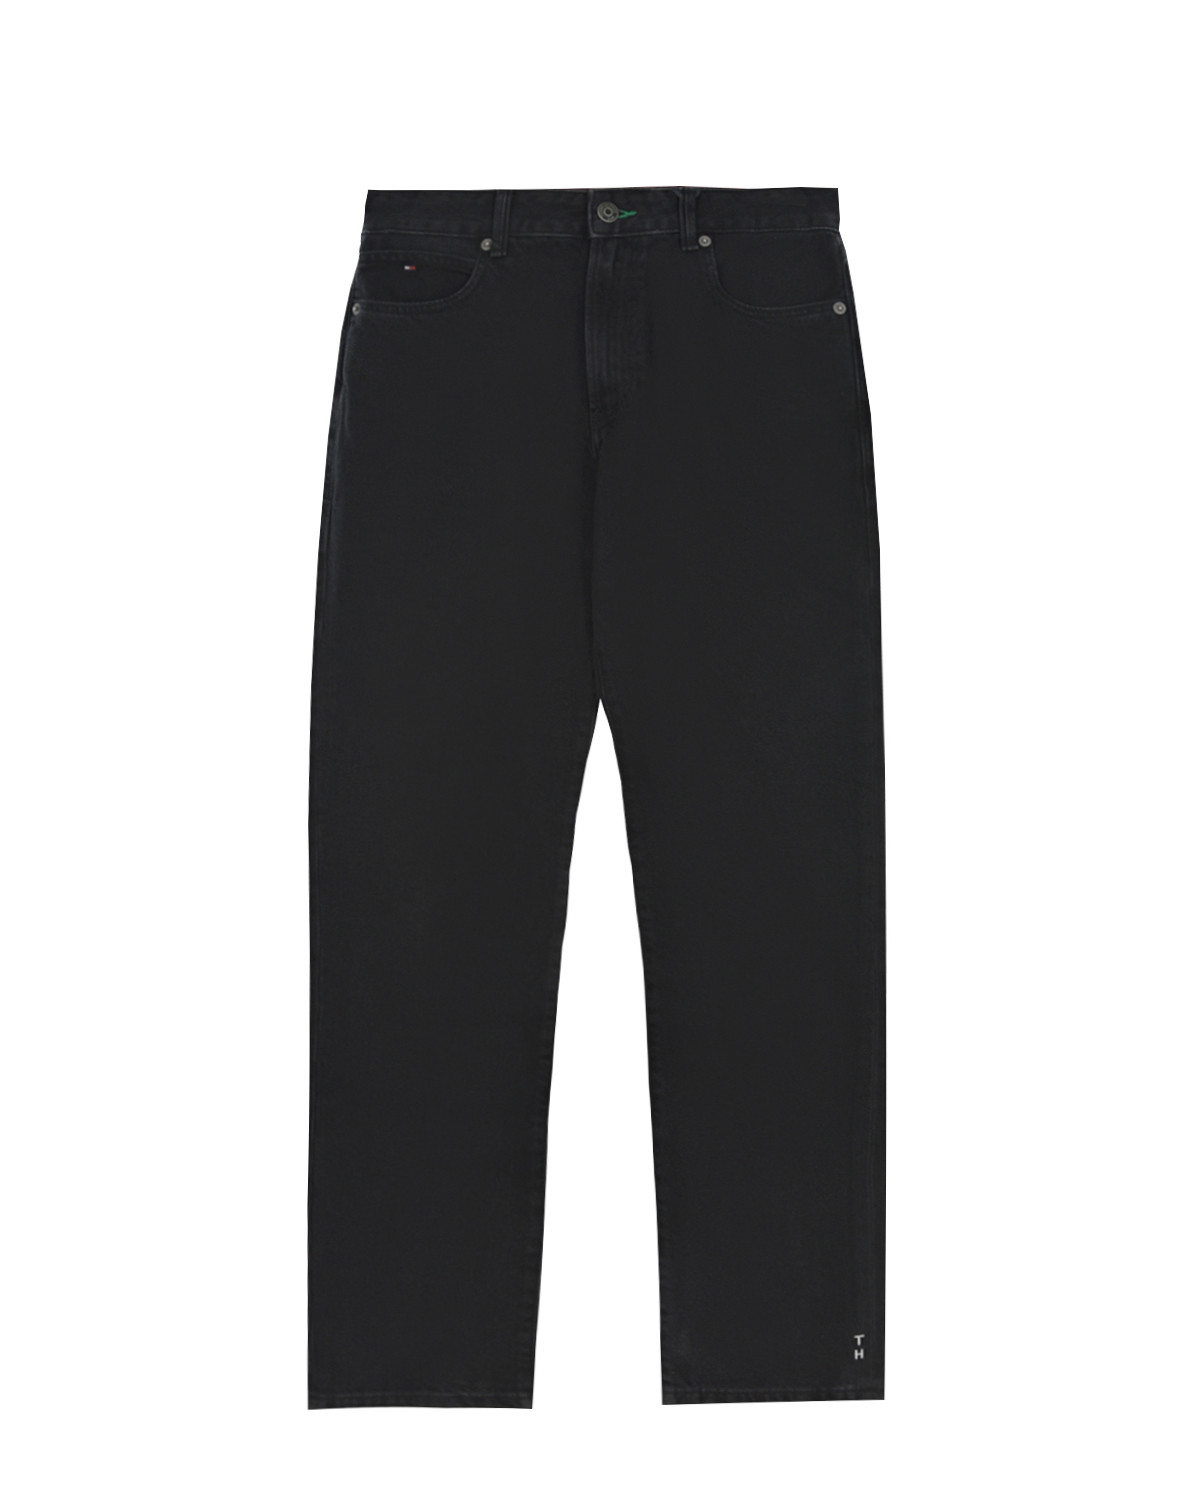 Черные джинсы прямого кроя Tommy Hilfiger детские, размер 140, цвет черный - фото 1